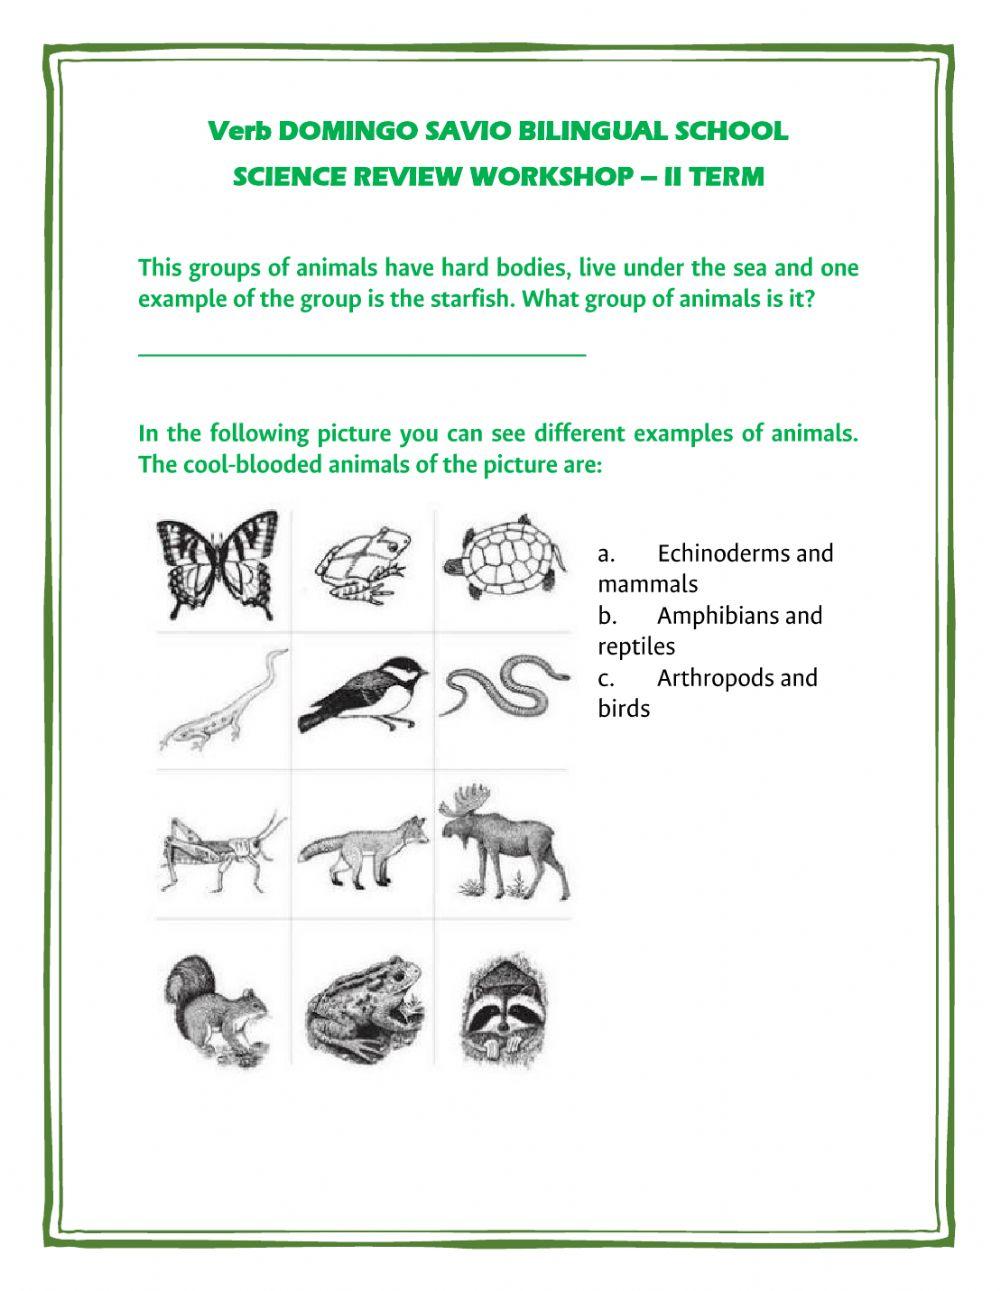 Science workshop ii term